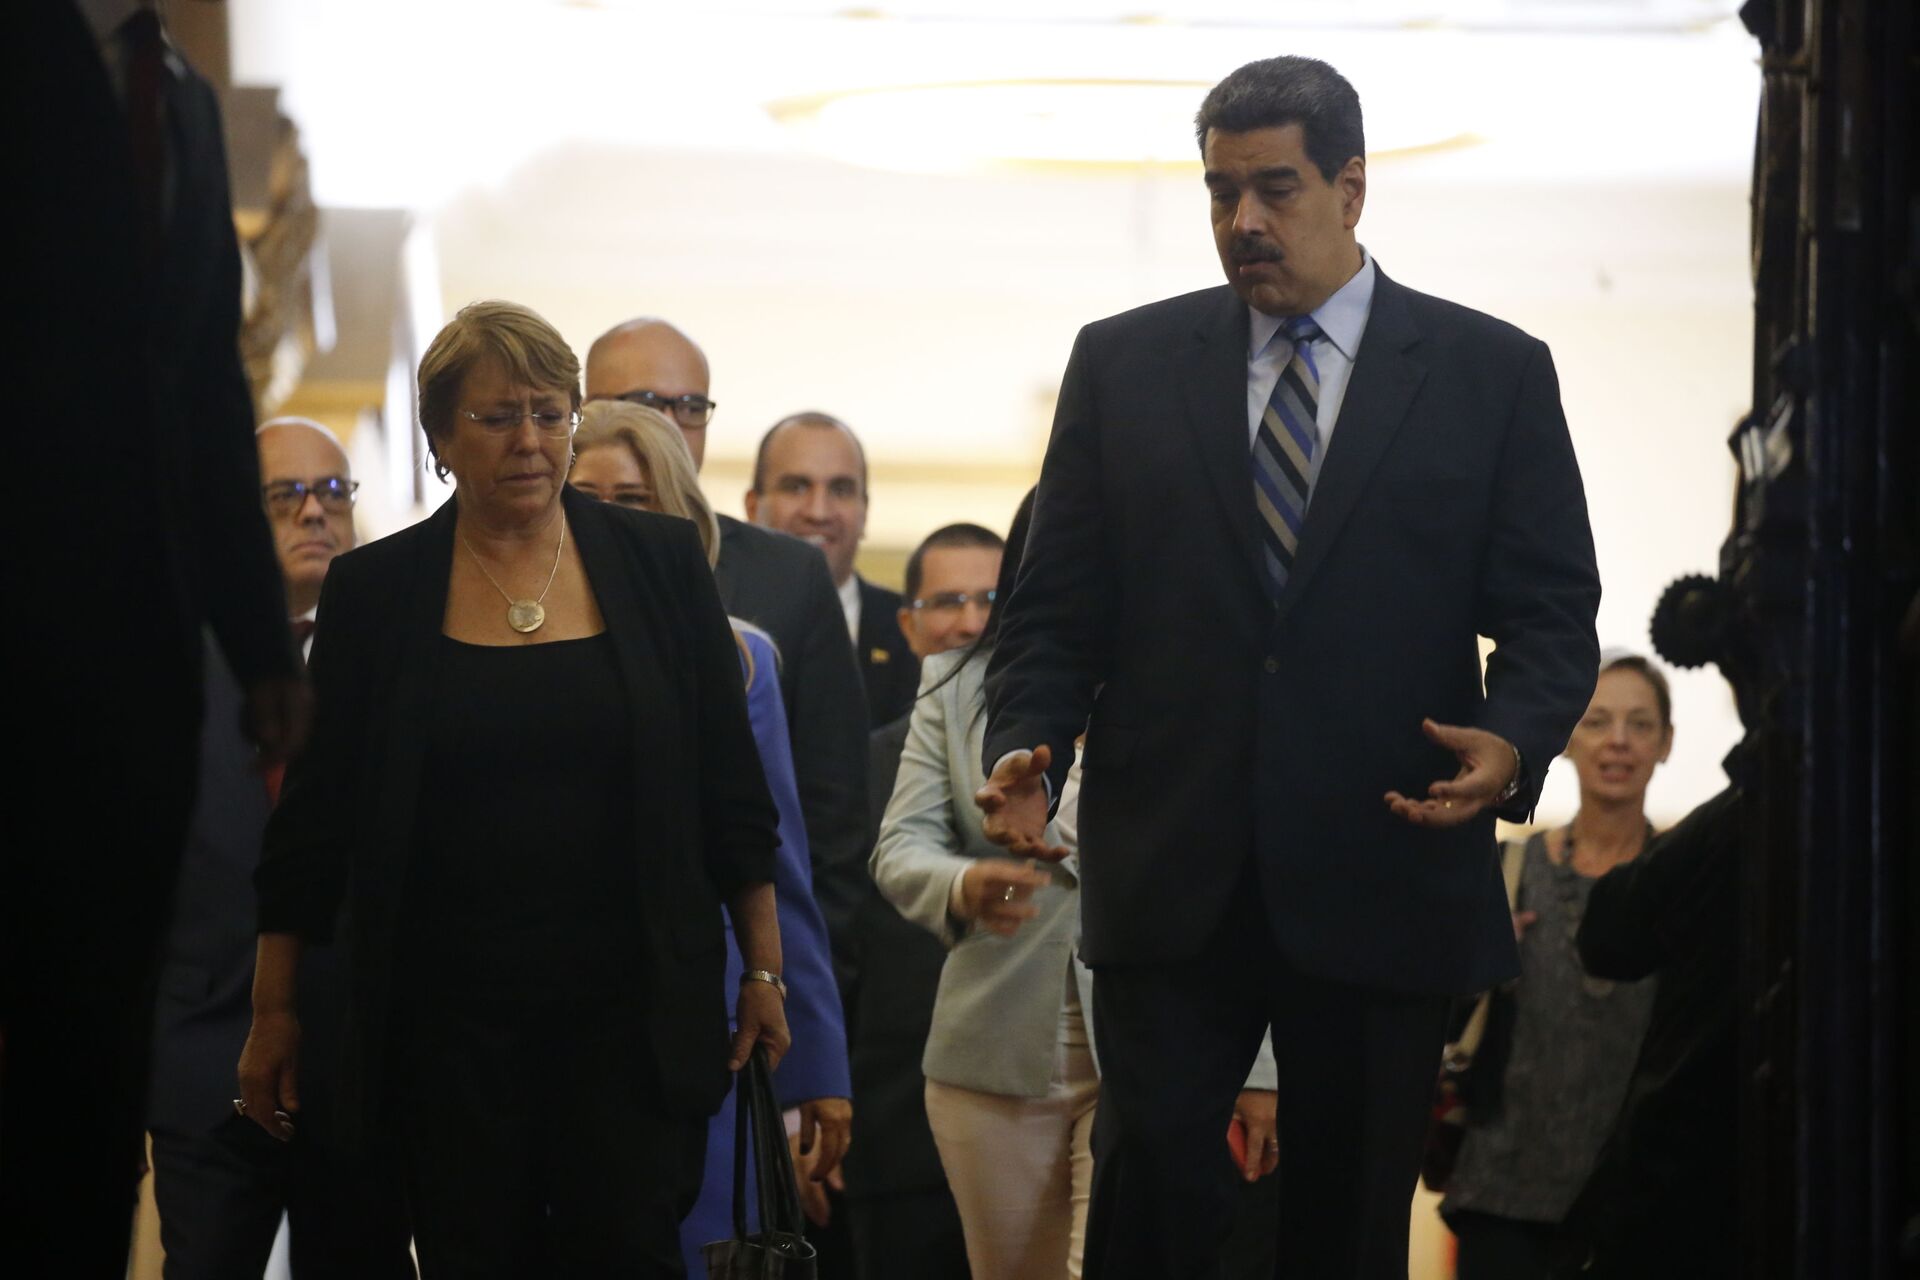 A Alta Comissária da ONU para os Direitos Humanos, Michelle Bachelet, à esquerda, conversa com o presidente da Venezuela, Nicolas Maduro, enquanto eles saem de uma reunião no Palácio Presidencial Miraflores, em Caracas, Venezuela (foto de arquivo) - Sputnik Brasil, 1920, 09.11.2021